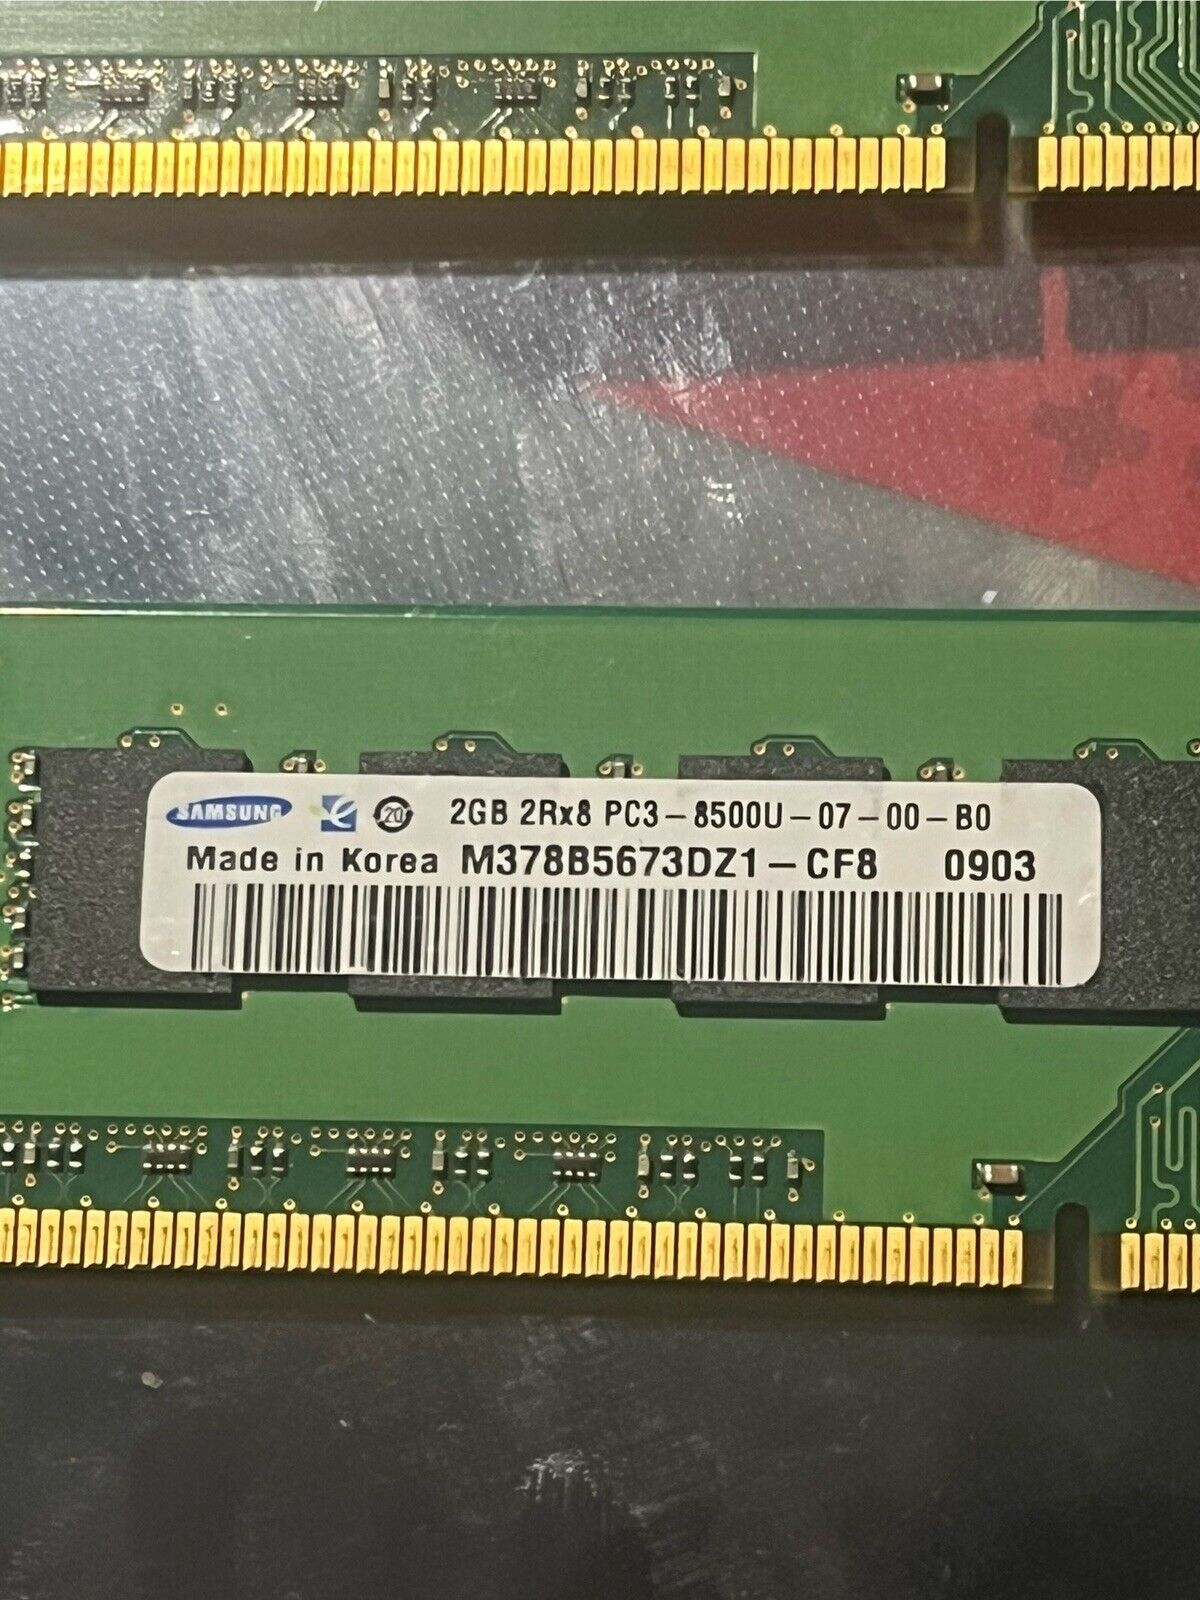 SAMSUNG 2GB DDR3 PC3-8500 SODIMM FOR P-7908U FX EDITION